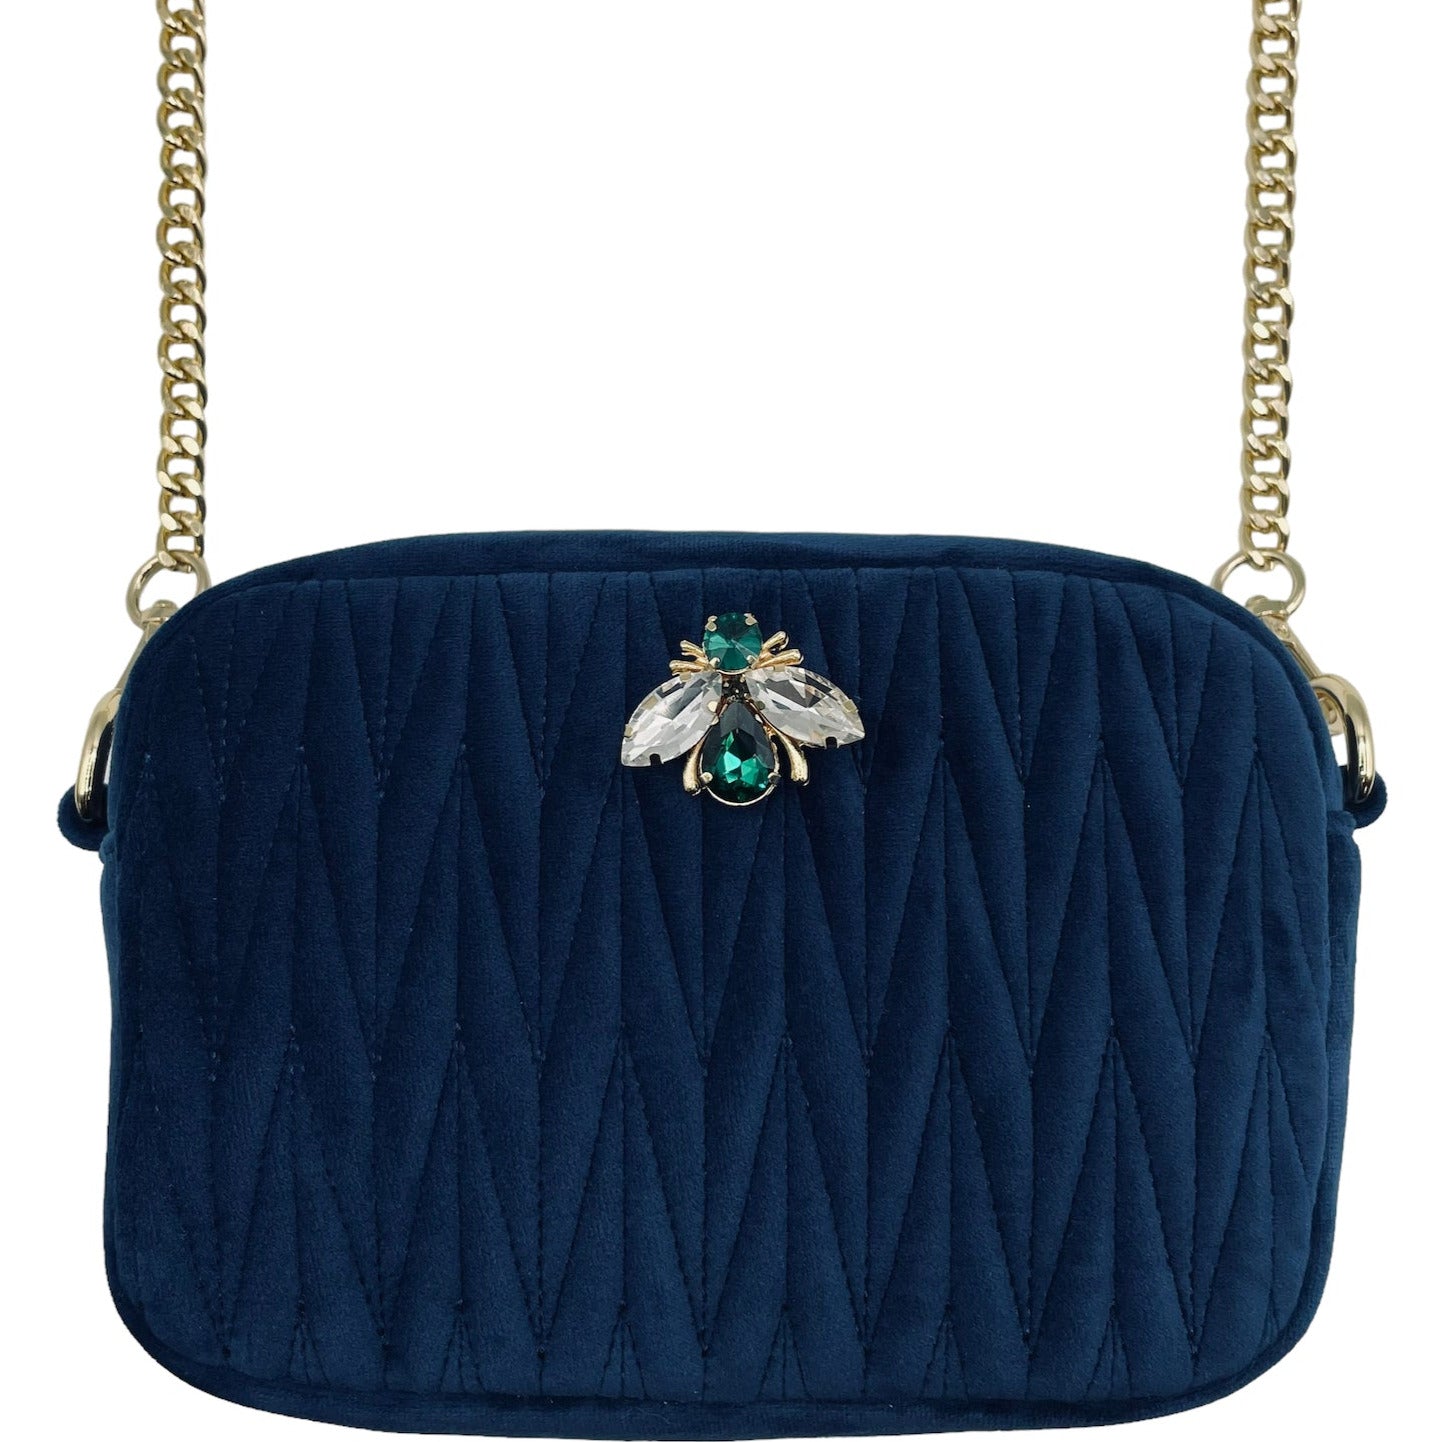 Velvet Rivington Handbag in Blue with luna bee pin - recycled velvet